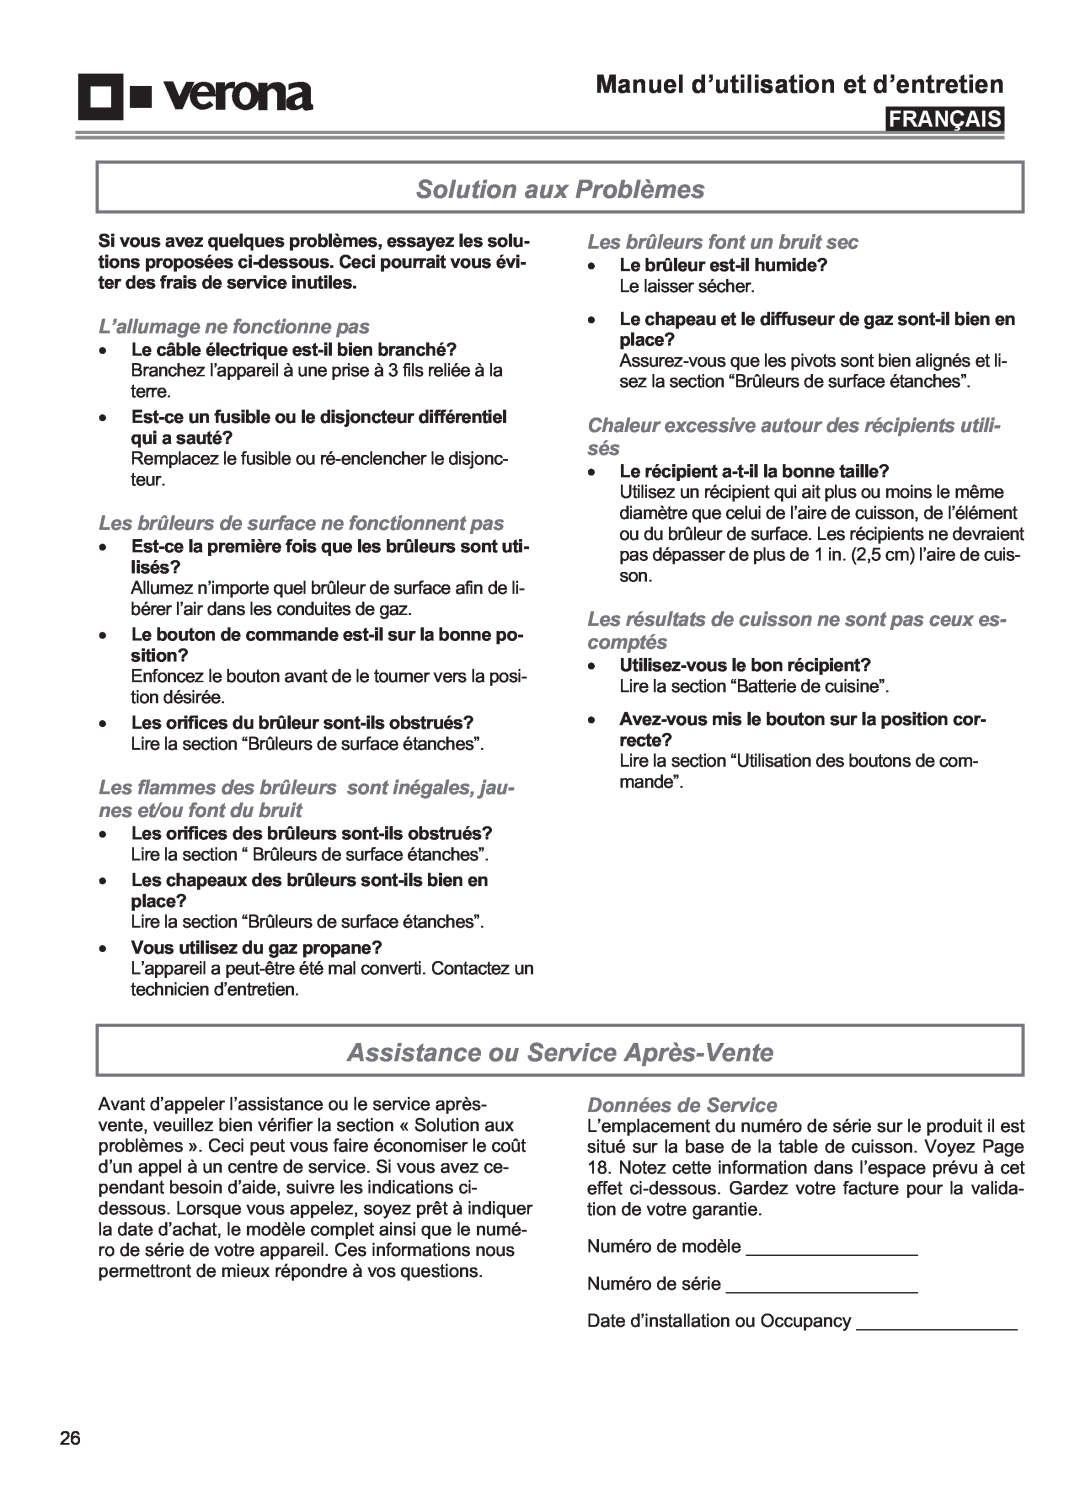 Verona VECTGV365SS manual Solution aux Problèmes, Assistance ou Service Après-Vente, L’allumage ne fonctionne pas, Français 